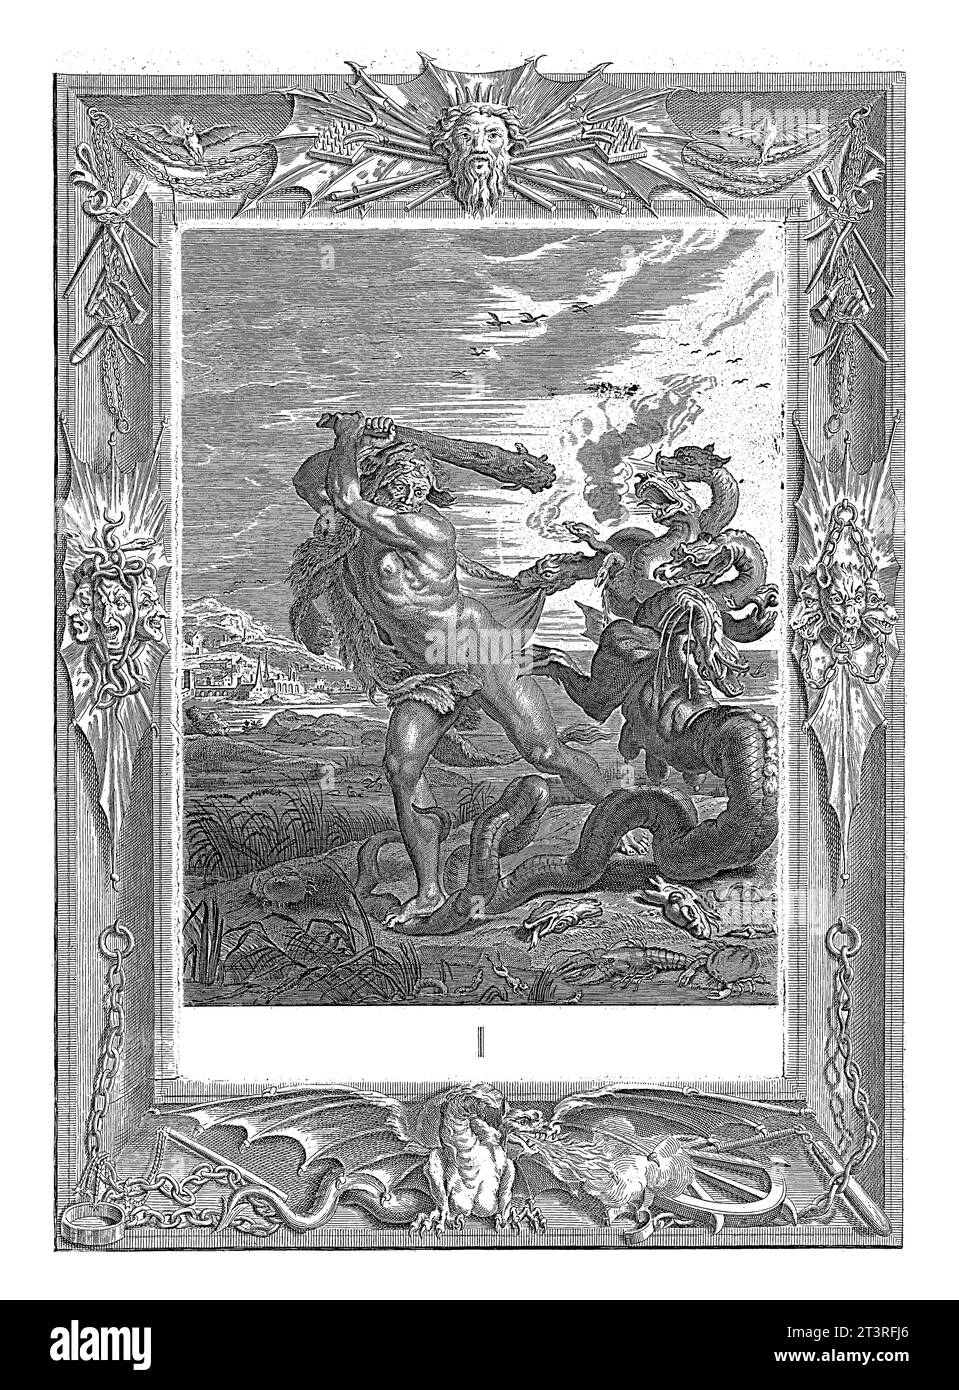 Hercule tue l'hydre de Lerna, Bernard Picart (atelier de), après Bernard Picart, 1731 Hercule attaque l'hydre de Lerna avec un bâton levé. Banque D'Images